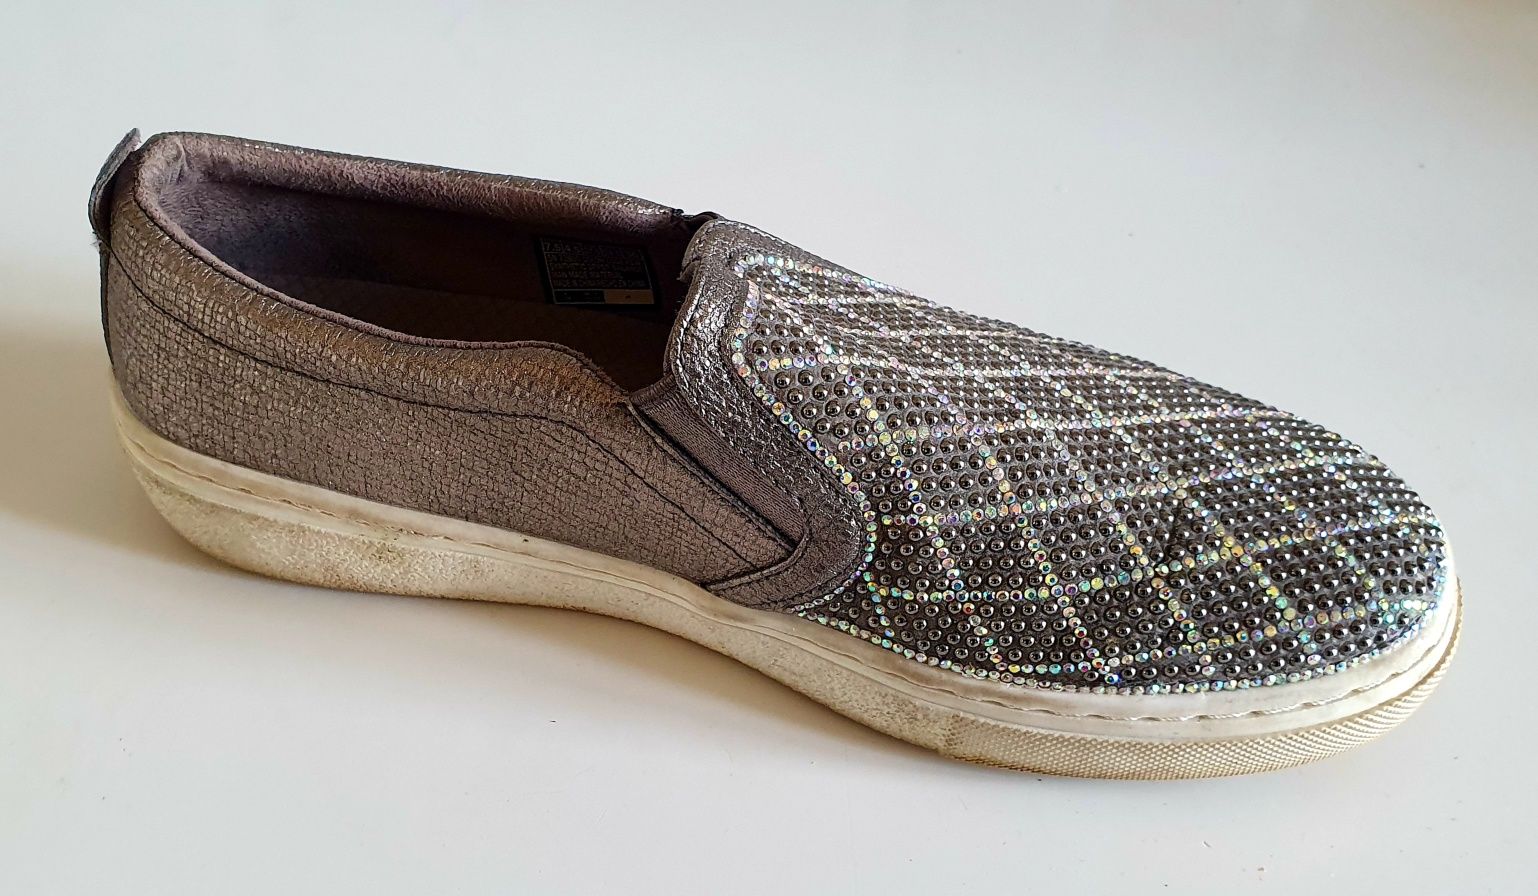 SKECHERS roz. 37.5 wkładka 24.5 cm slippers pięknie zdobione